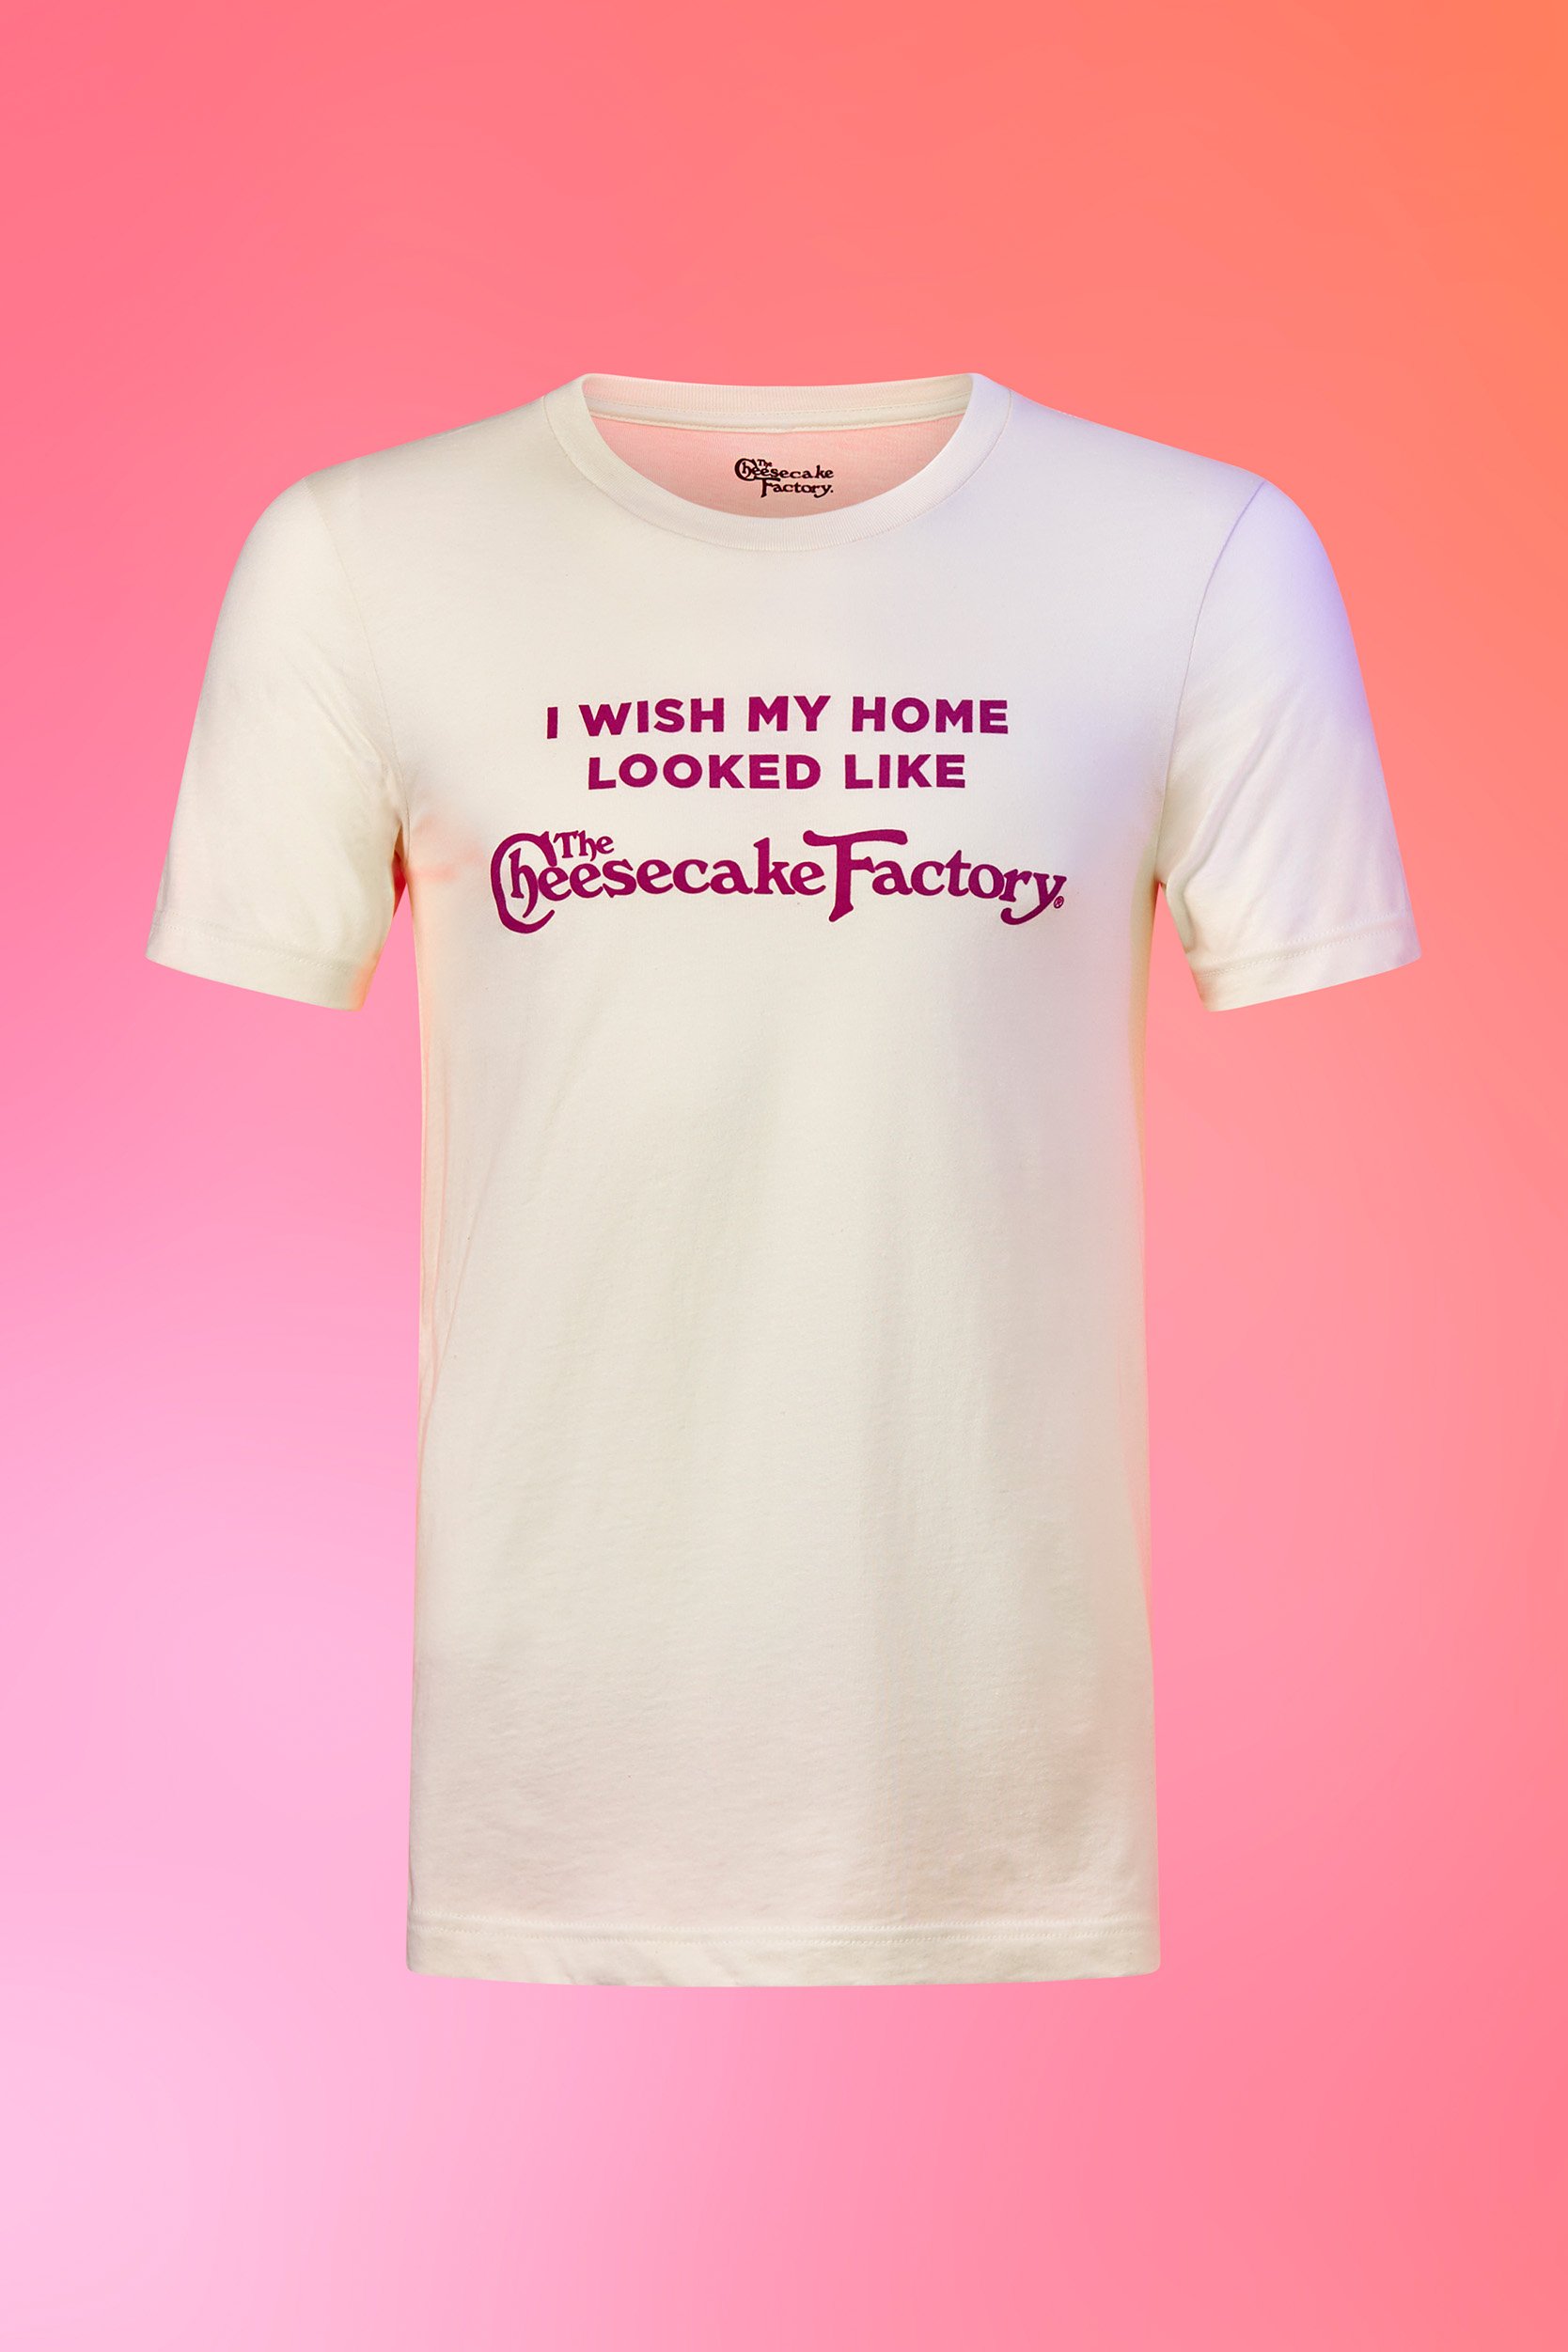 I Wish My Home shirt image1_2x3_11.jpg